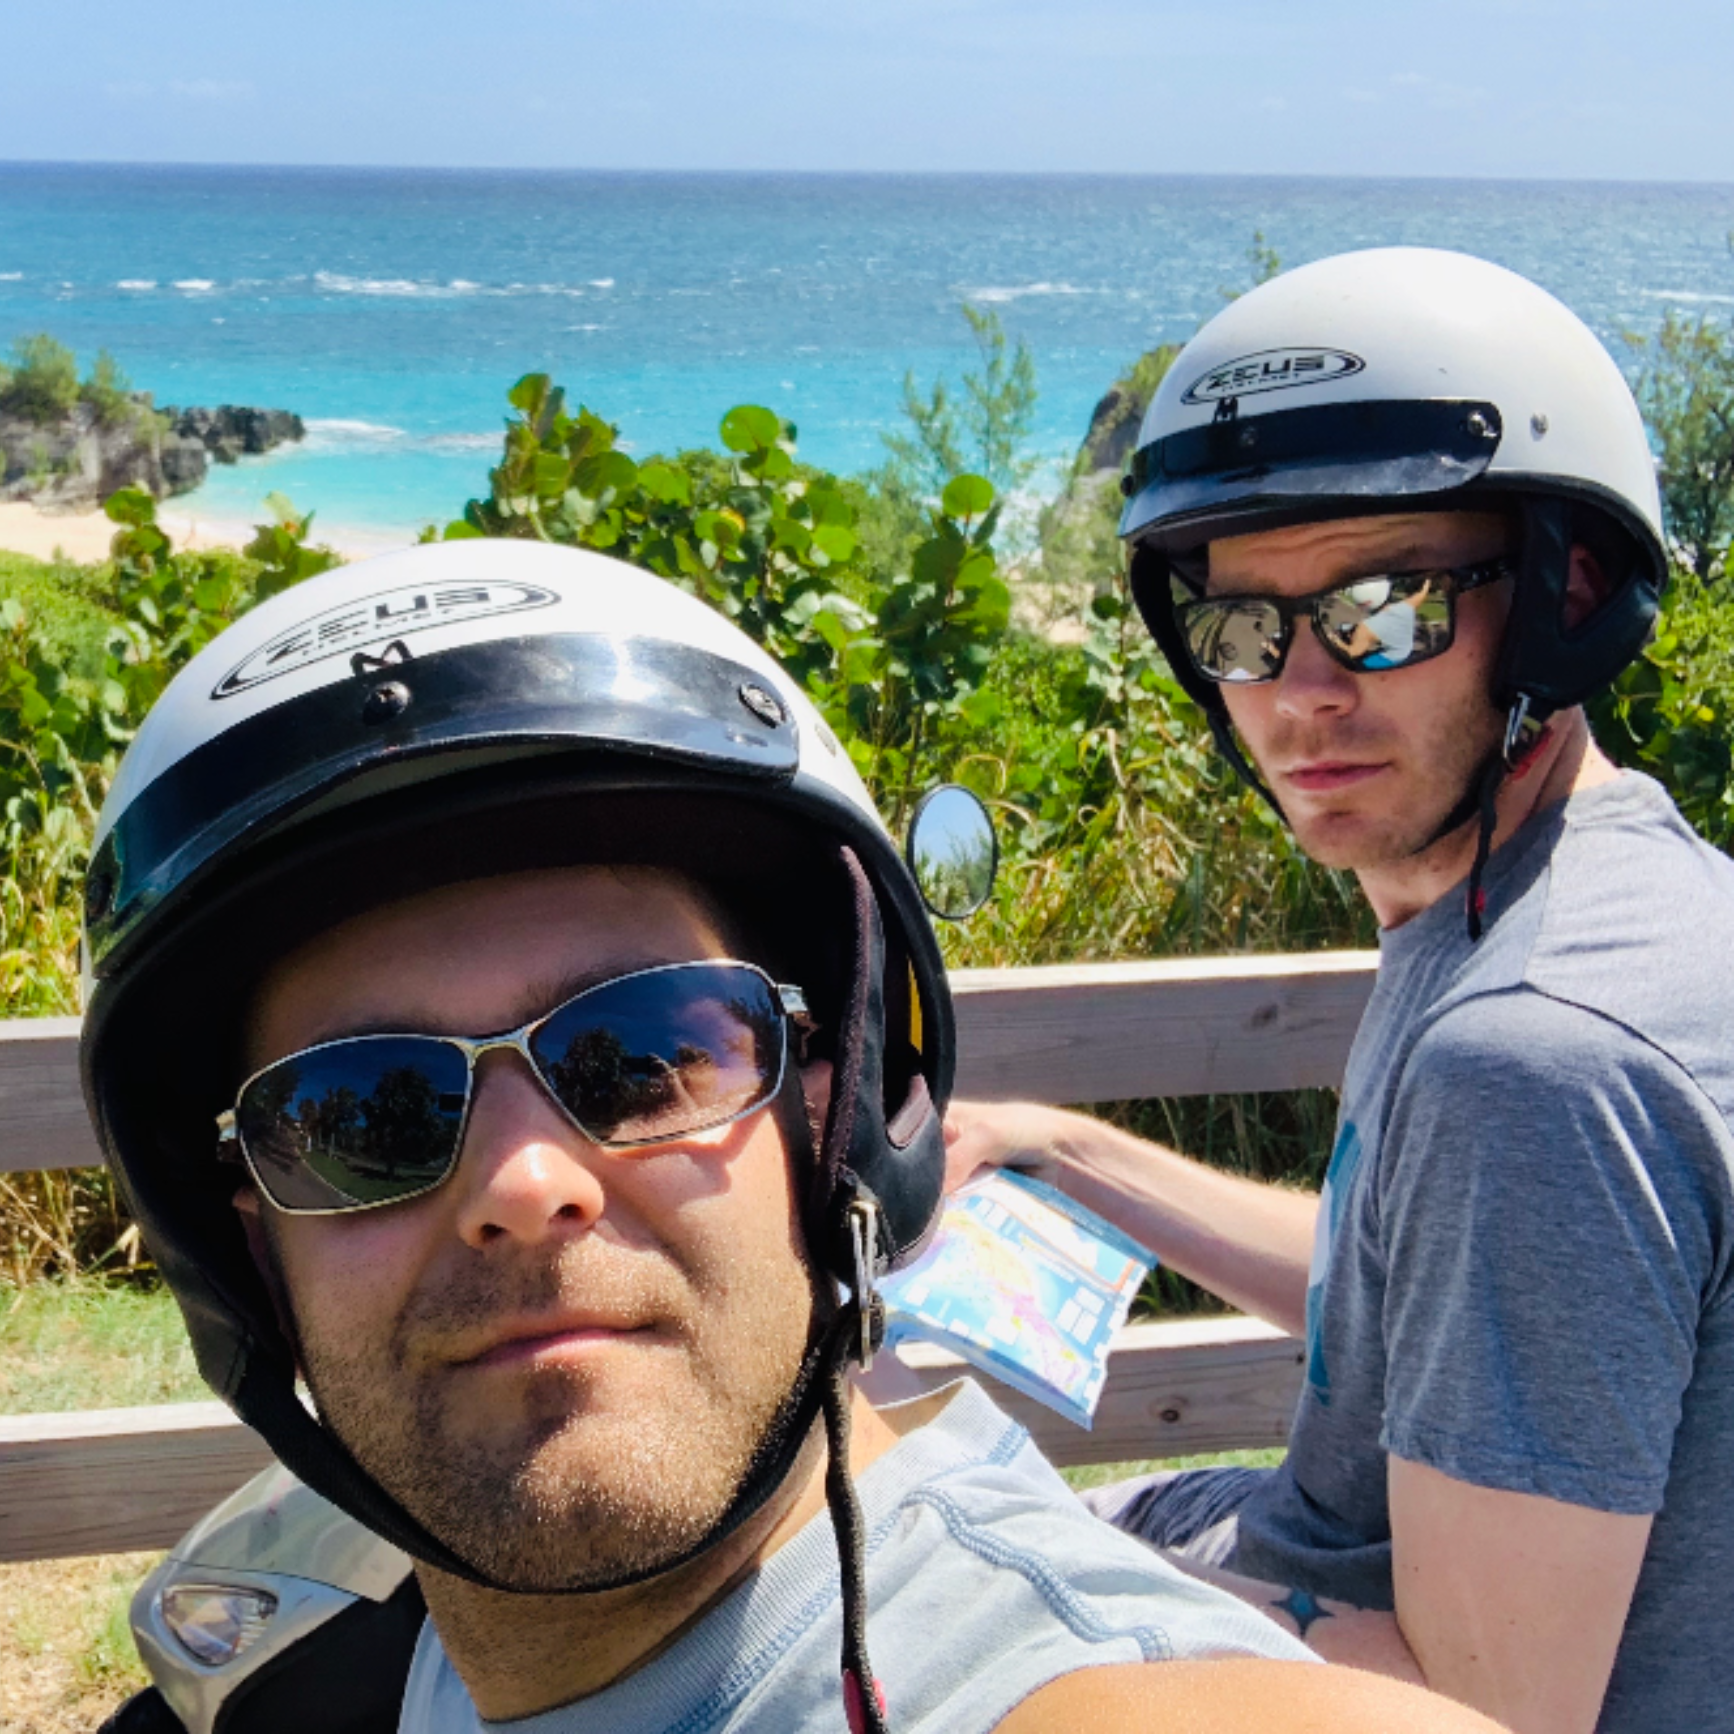 Motorbikes on vacation! 